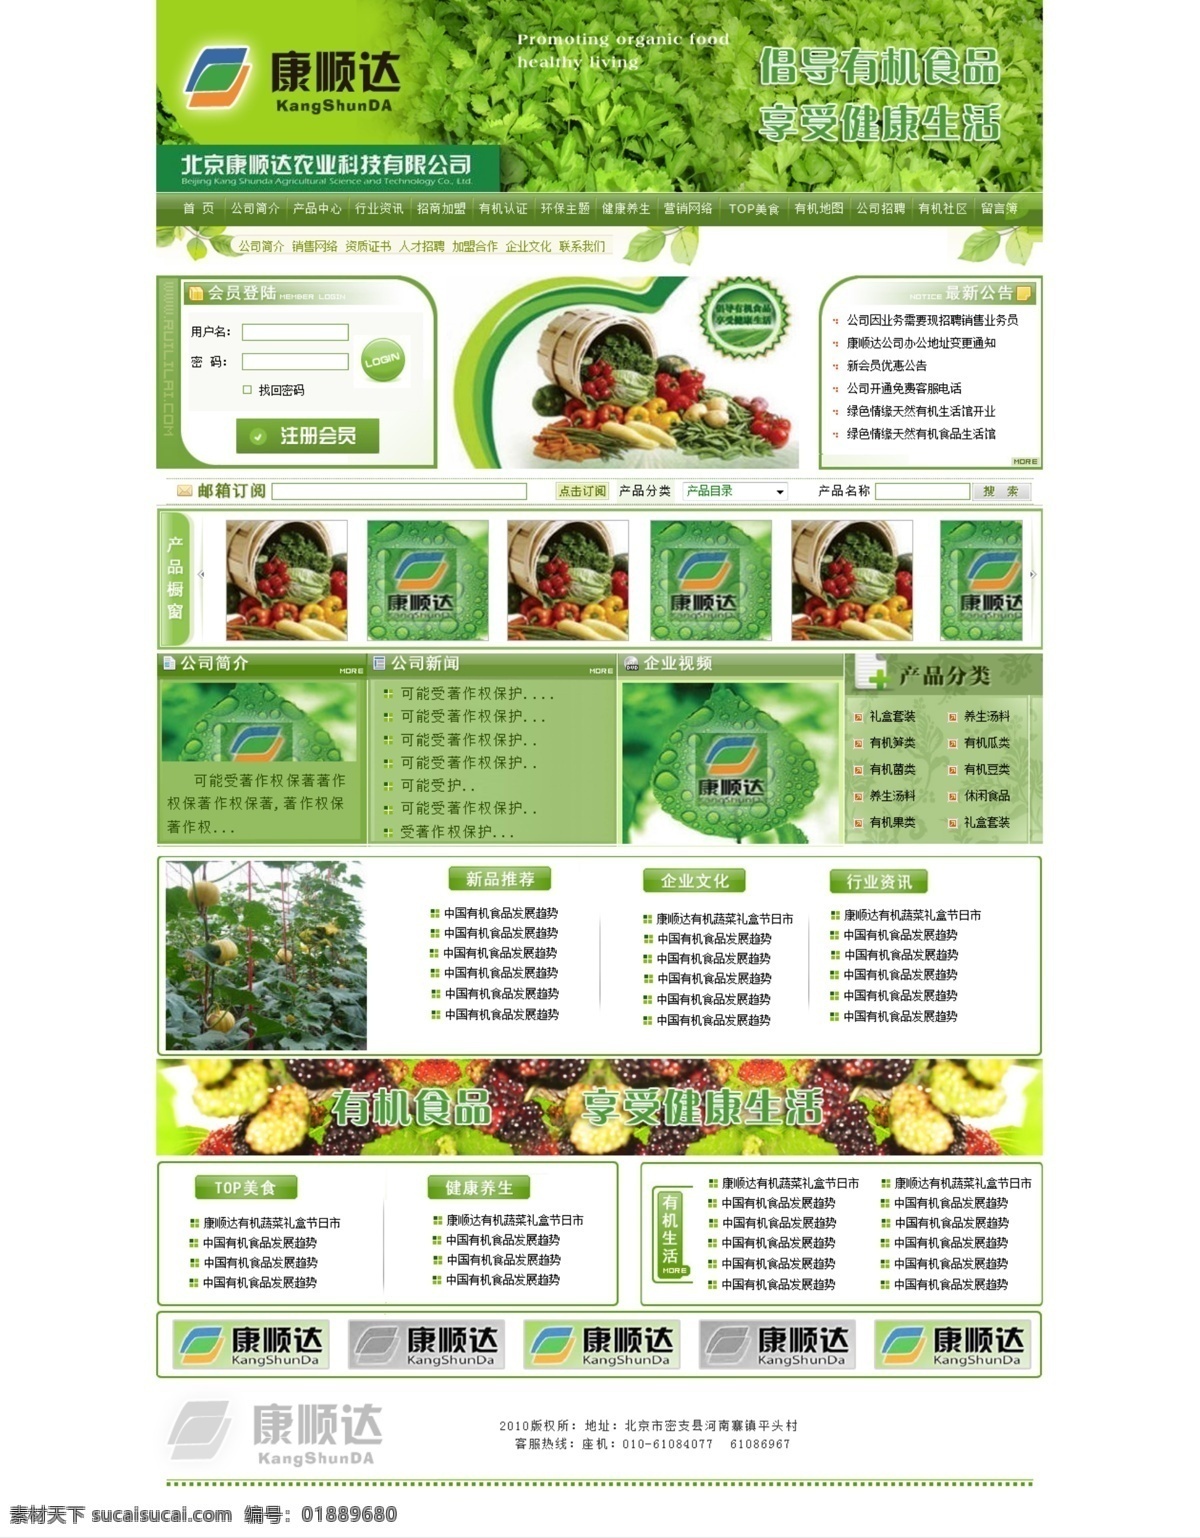 绿色 农业科技 公司 模版 绿色网站 农业 绿色模版 农产品 中文网站 中文模版 网页模板 源文件